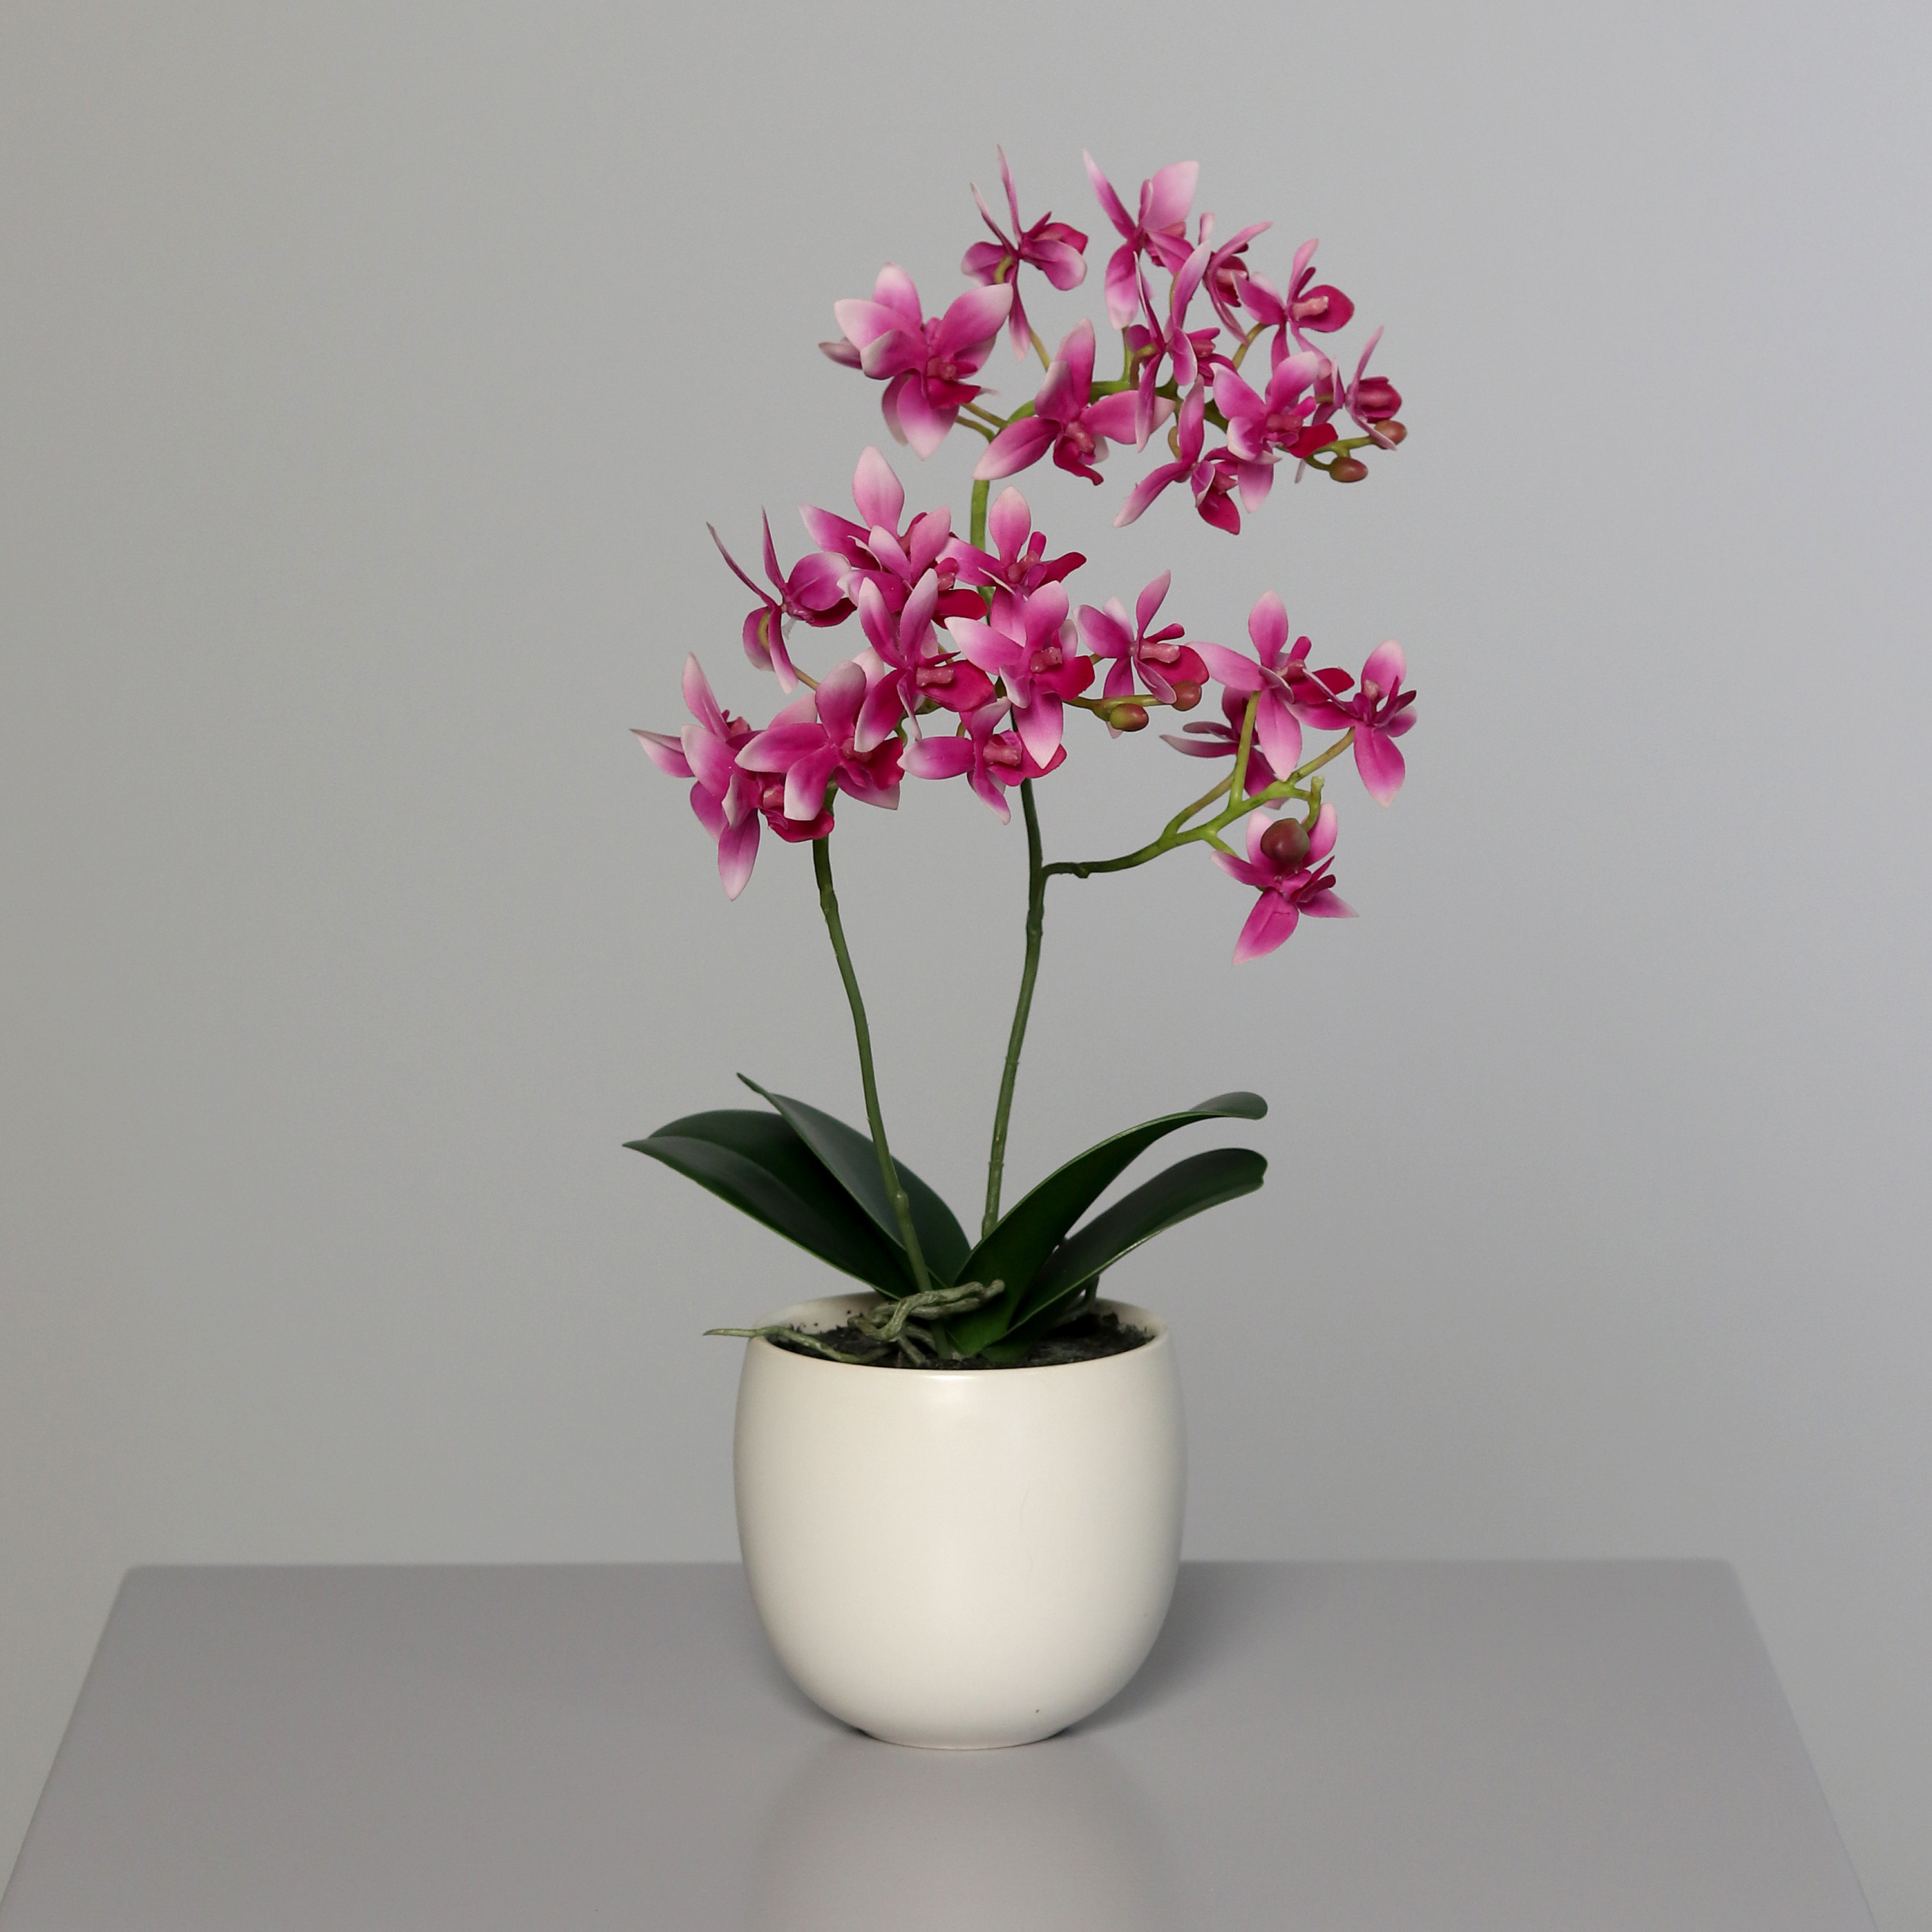 Orchidee mit 2 Rispen 38cm rosa-pink im Keramiktopf DP künstliche Blumen Kunstpflanzen Kunstblumen